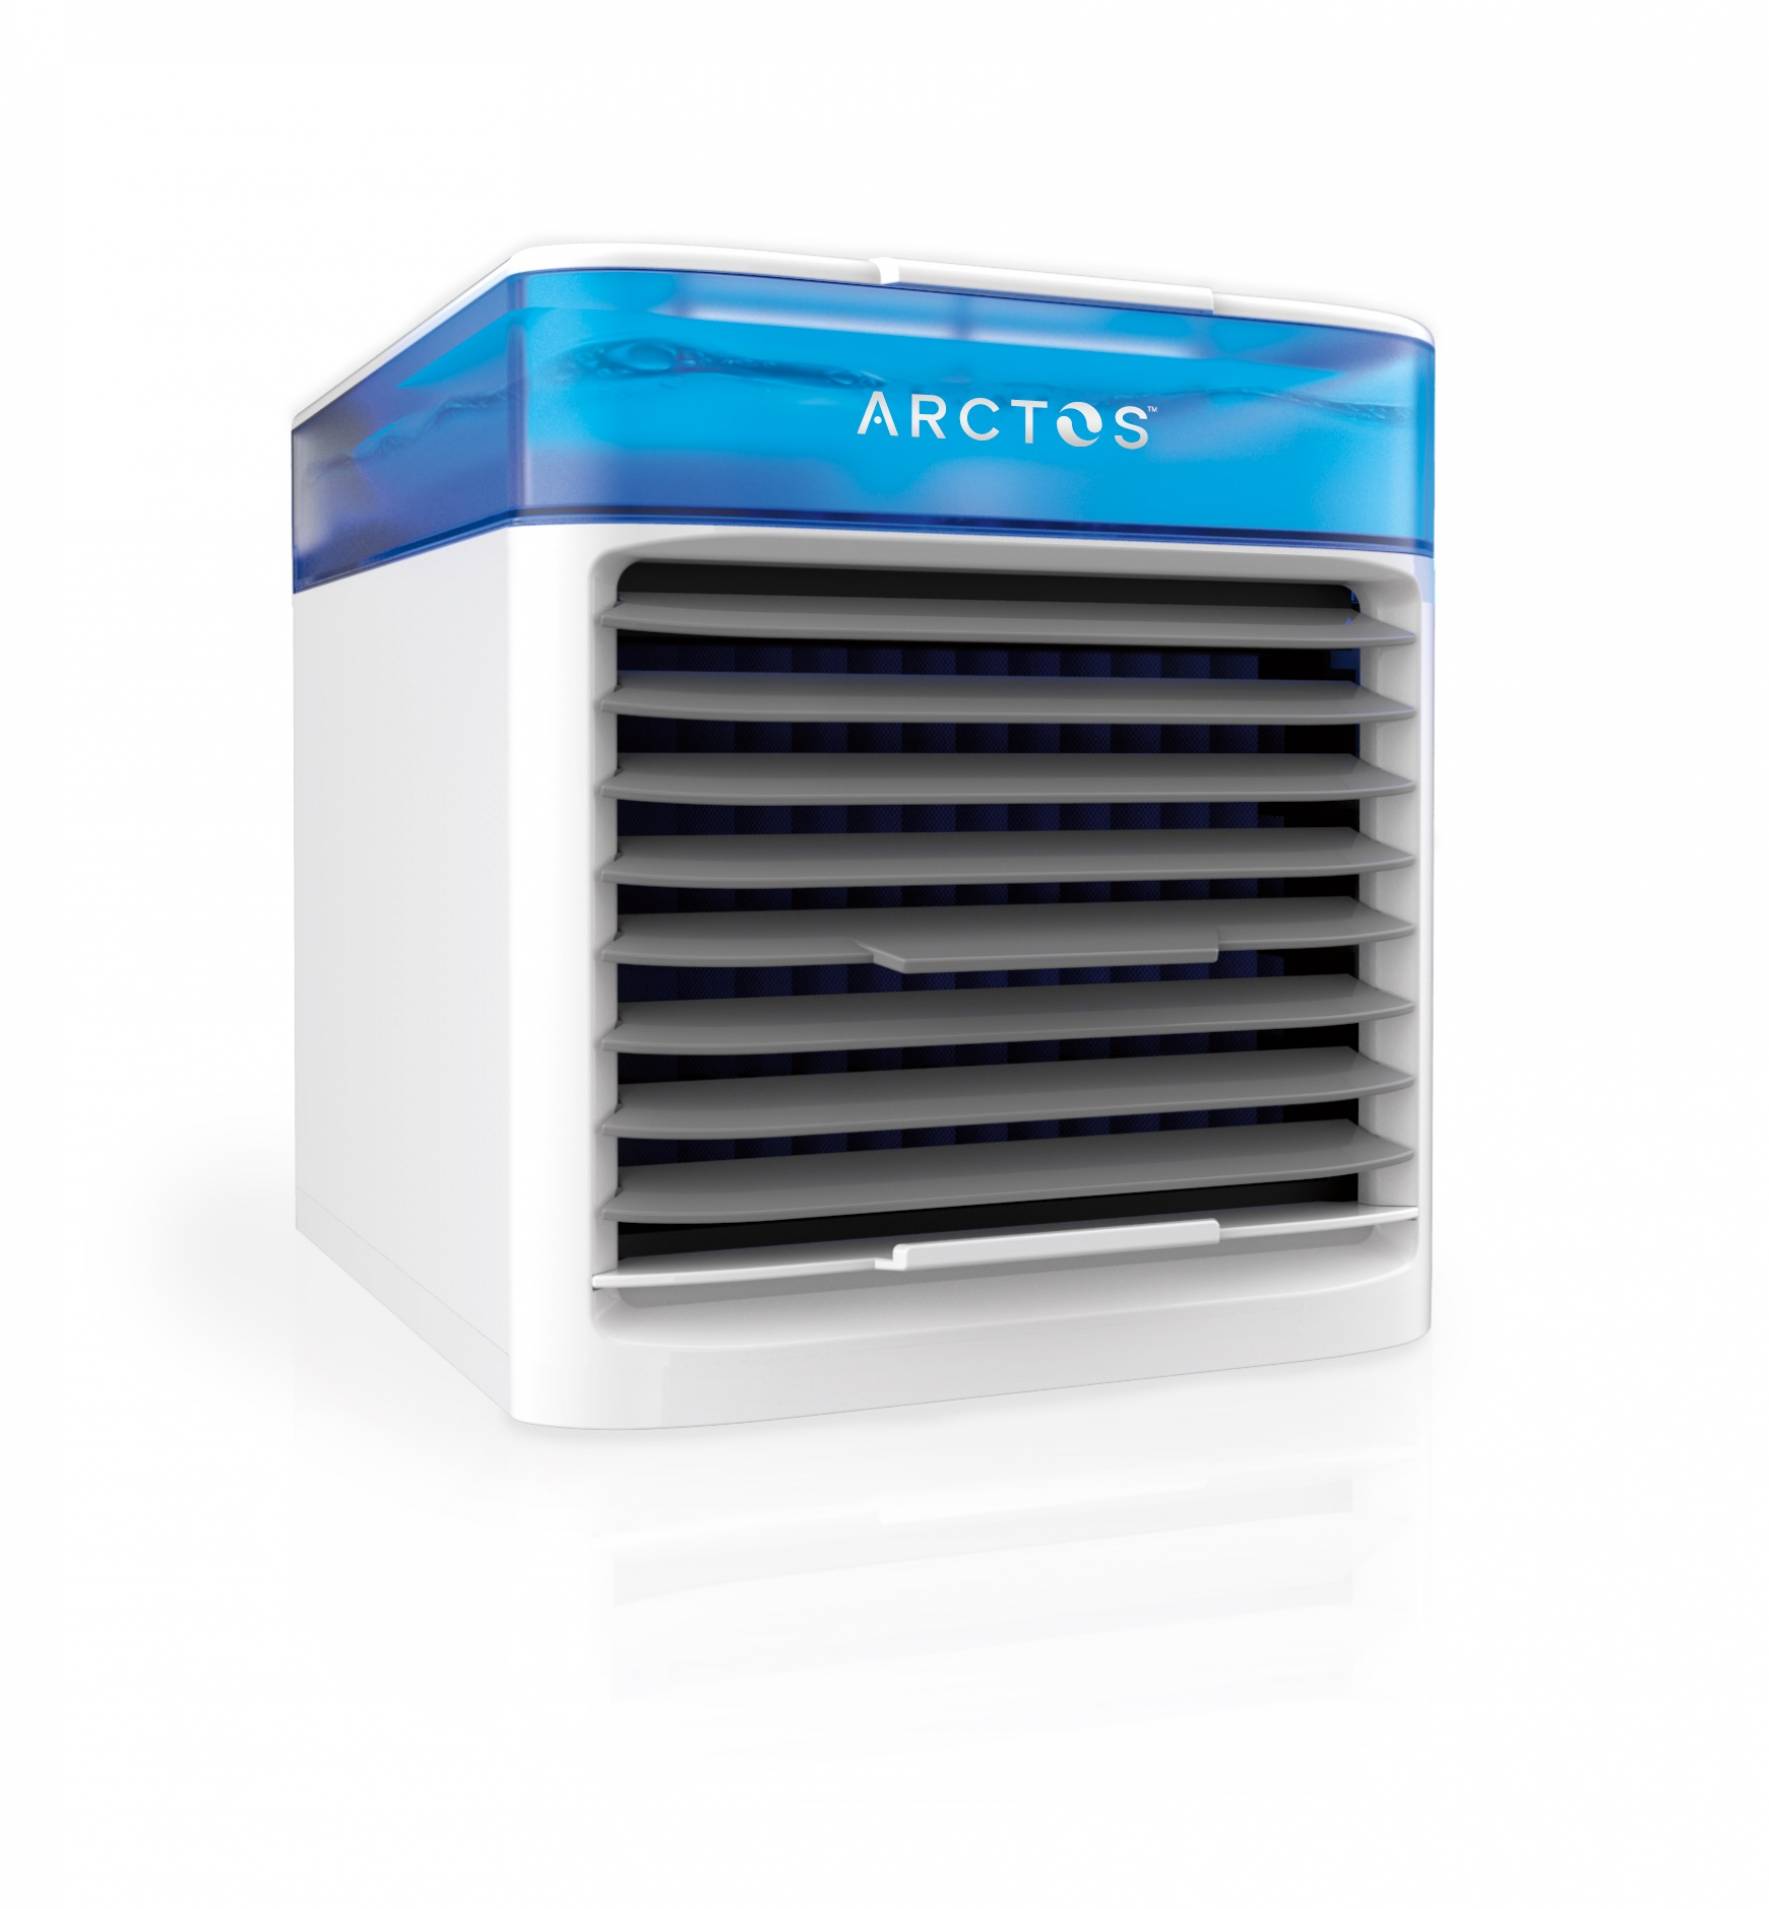 Arctos Portable Air Conditioner Reviews